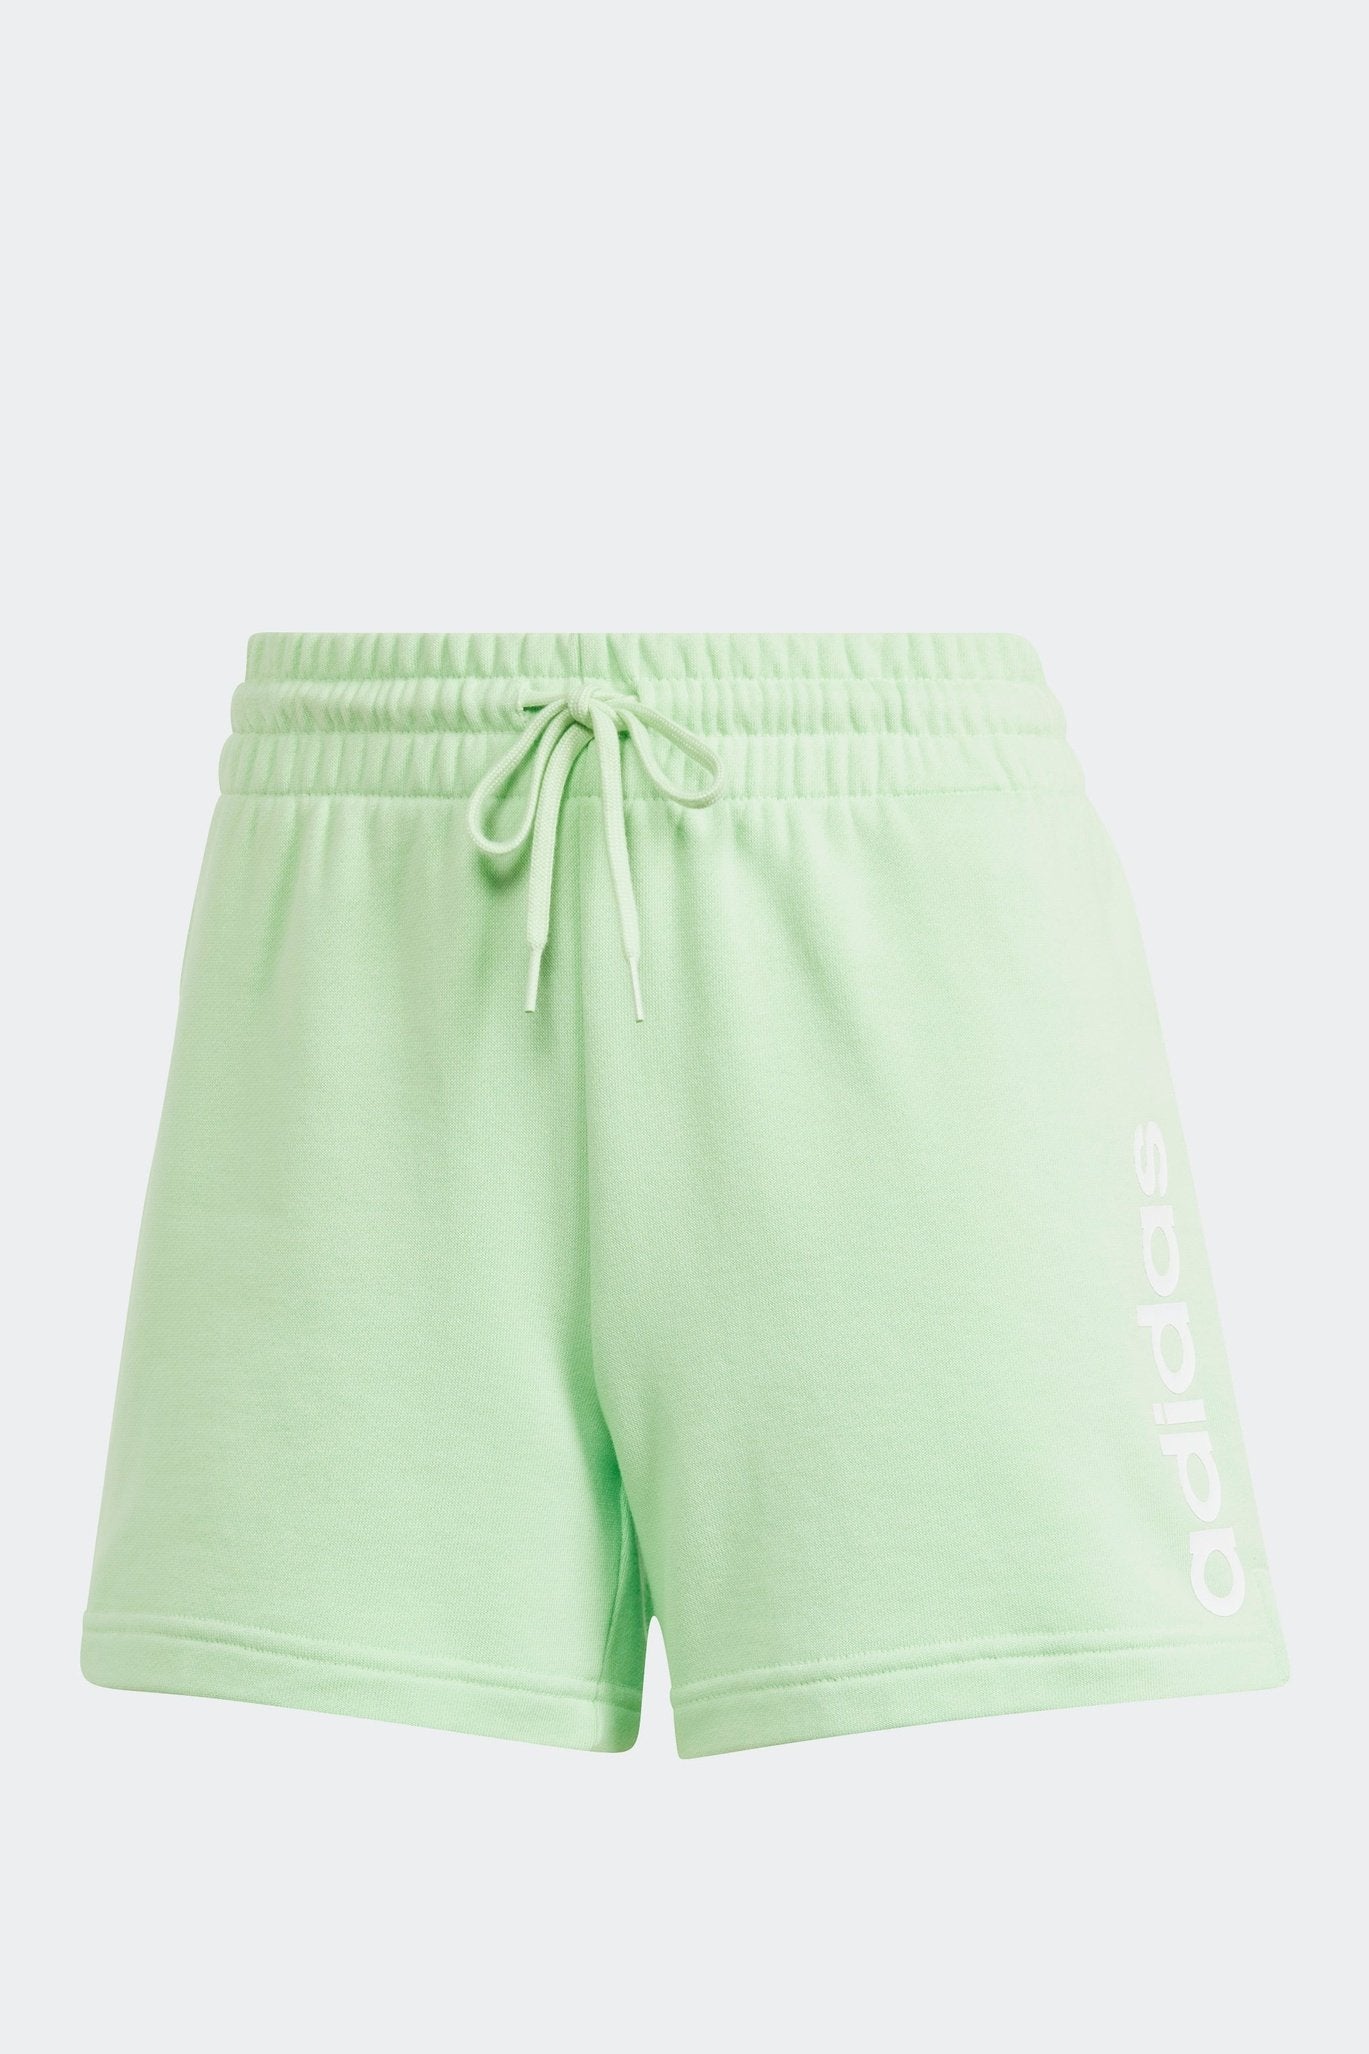 מכנסיים קצרים לנשים LIN FT בצבע ירוק בהיר